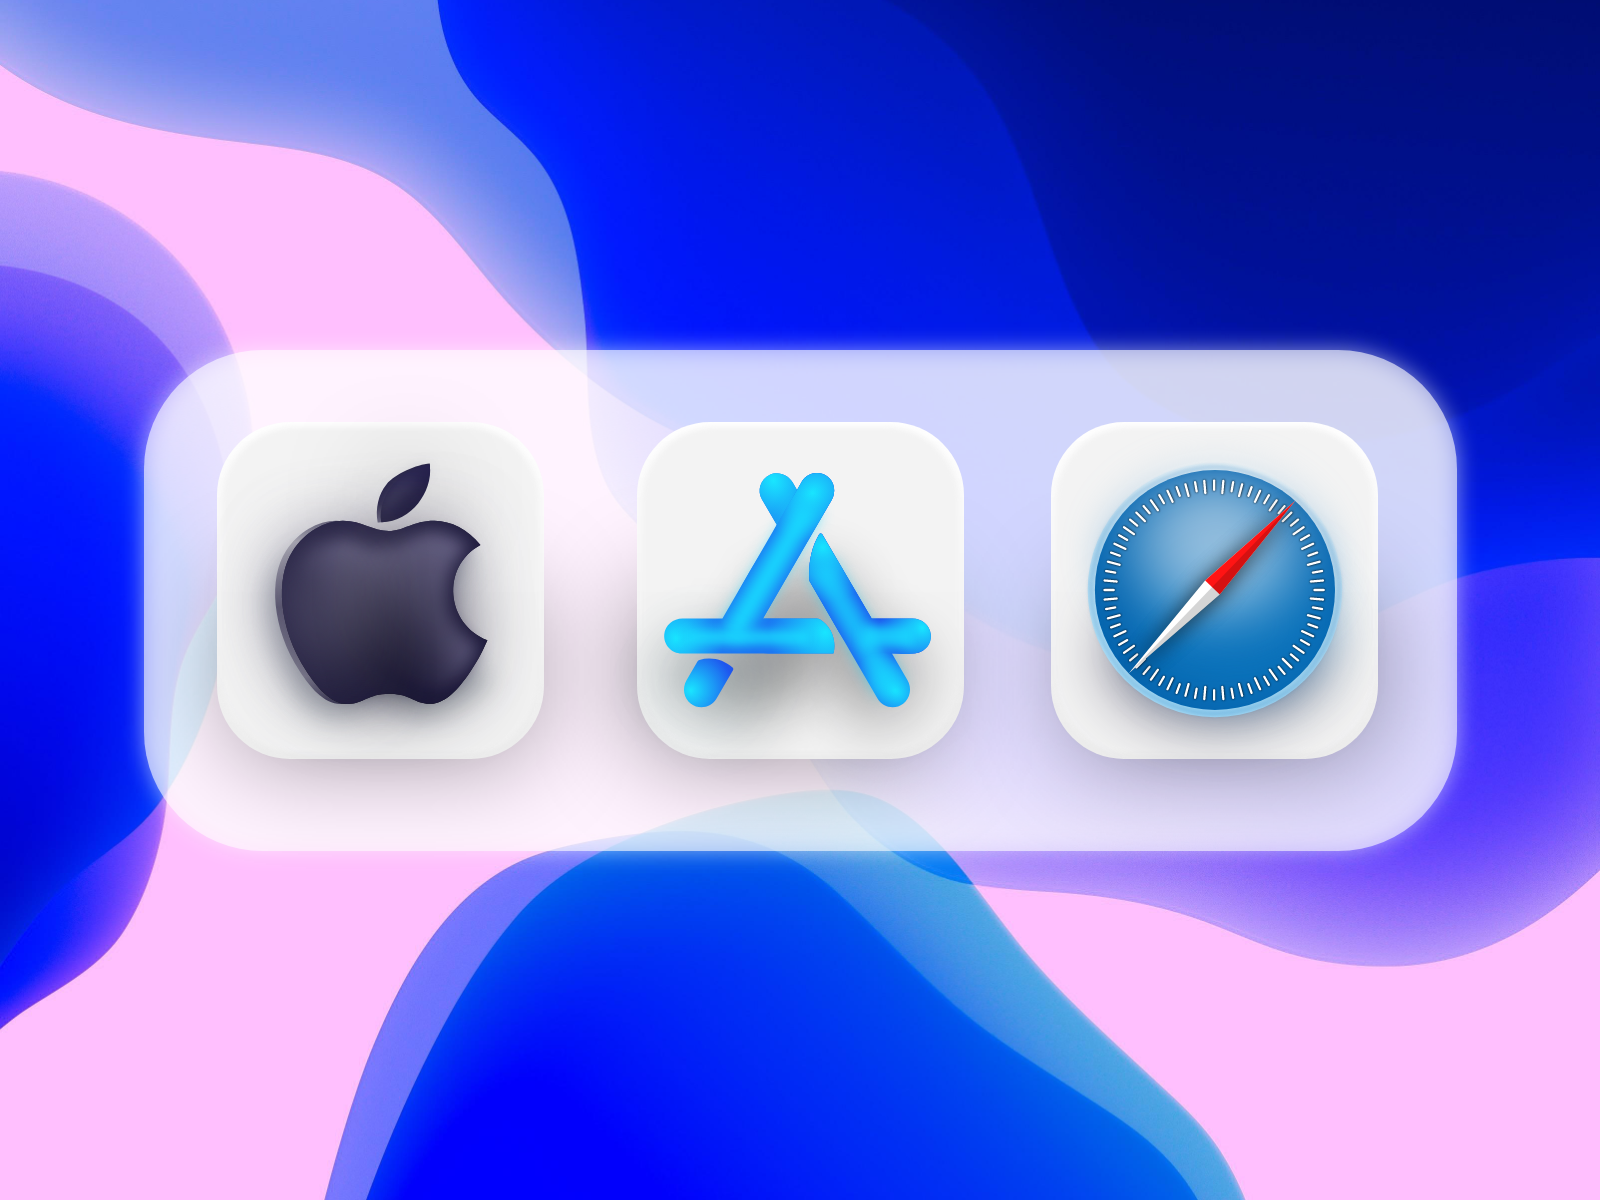 Иконка IOS. Иконки в стиле Apple. Иконки иос 14. Иконки приложений Apple. Айфон 14 значки